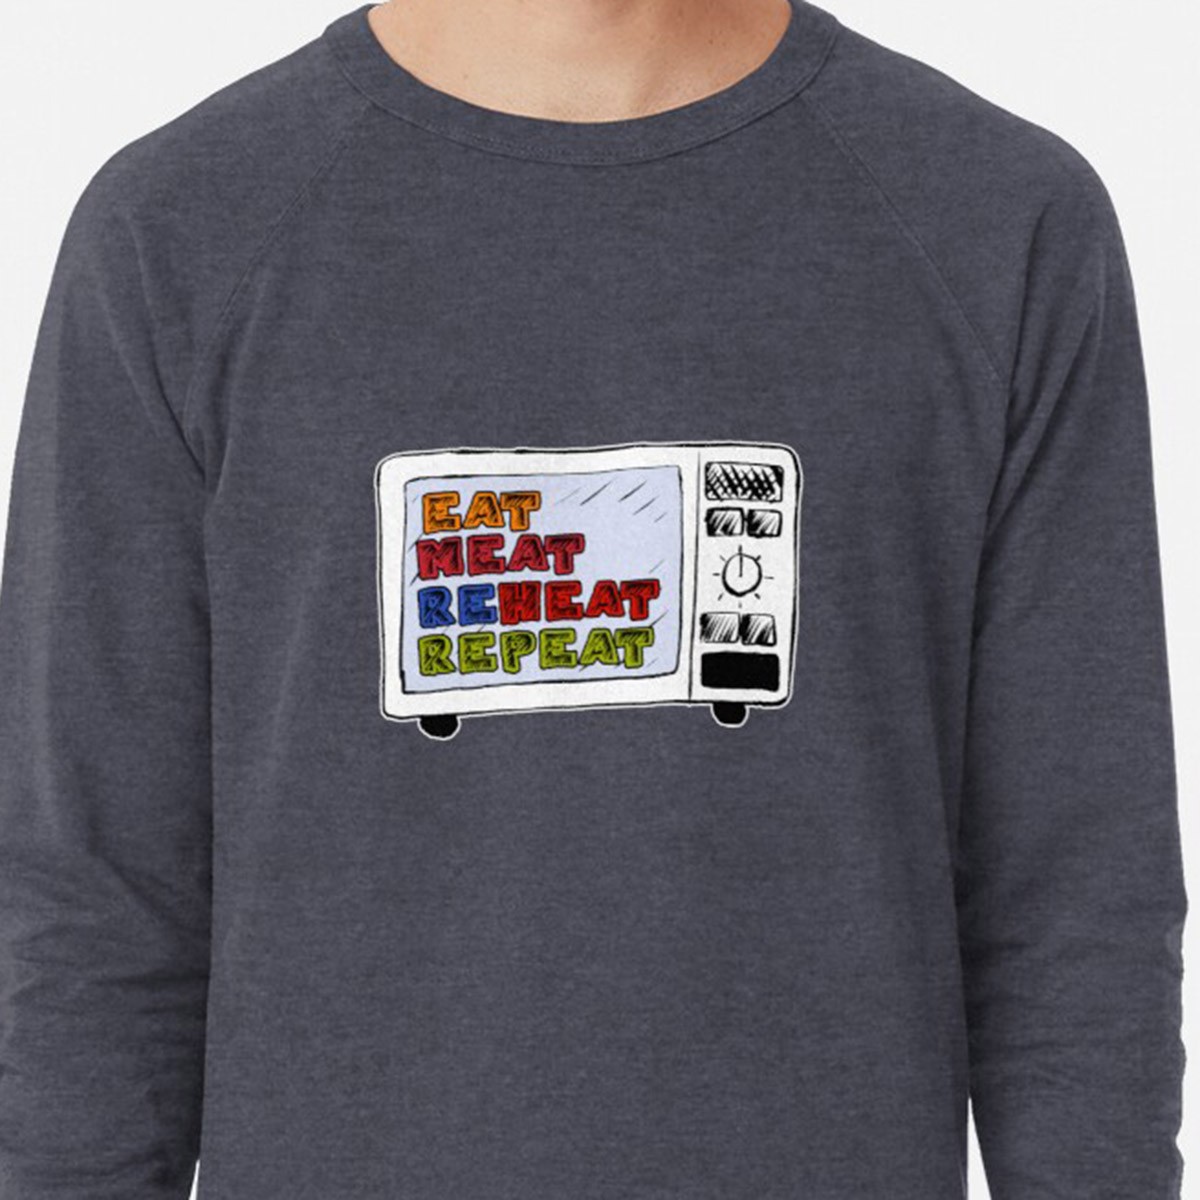 Eat Meat Reheat Repeat Lightweight Sweatshirt by NTK Apparel